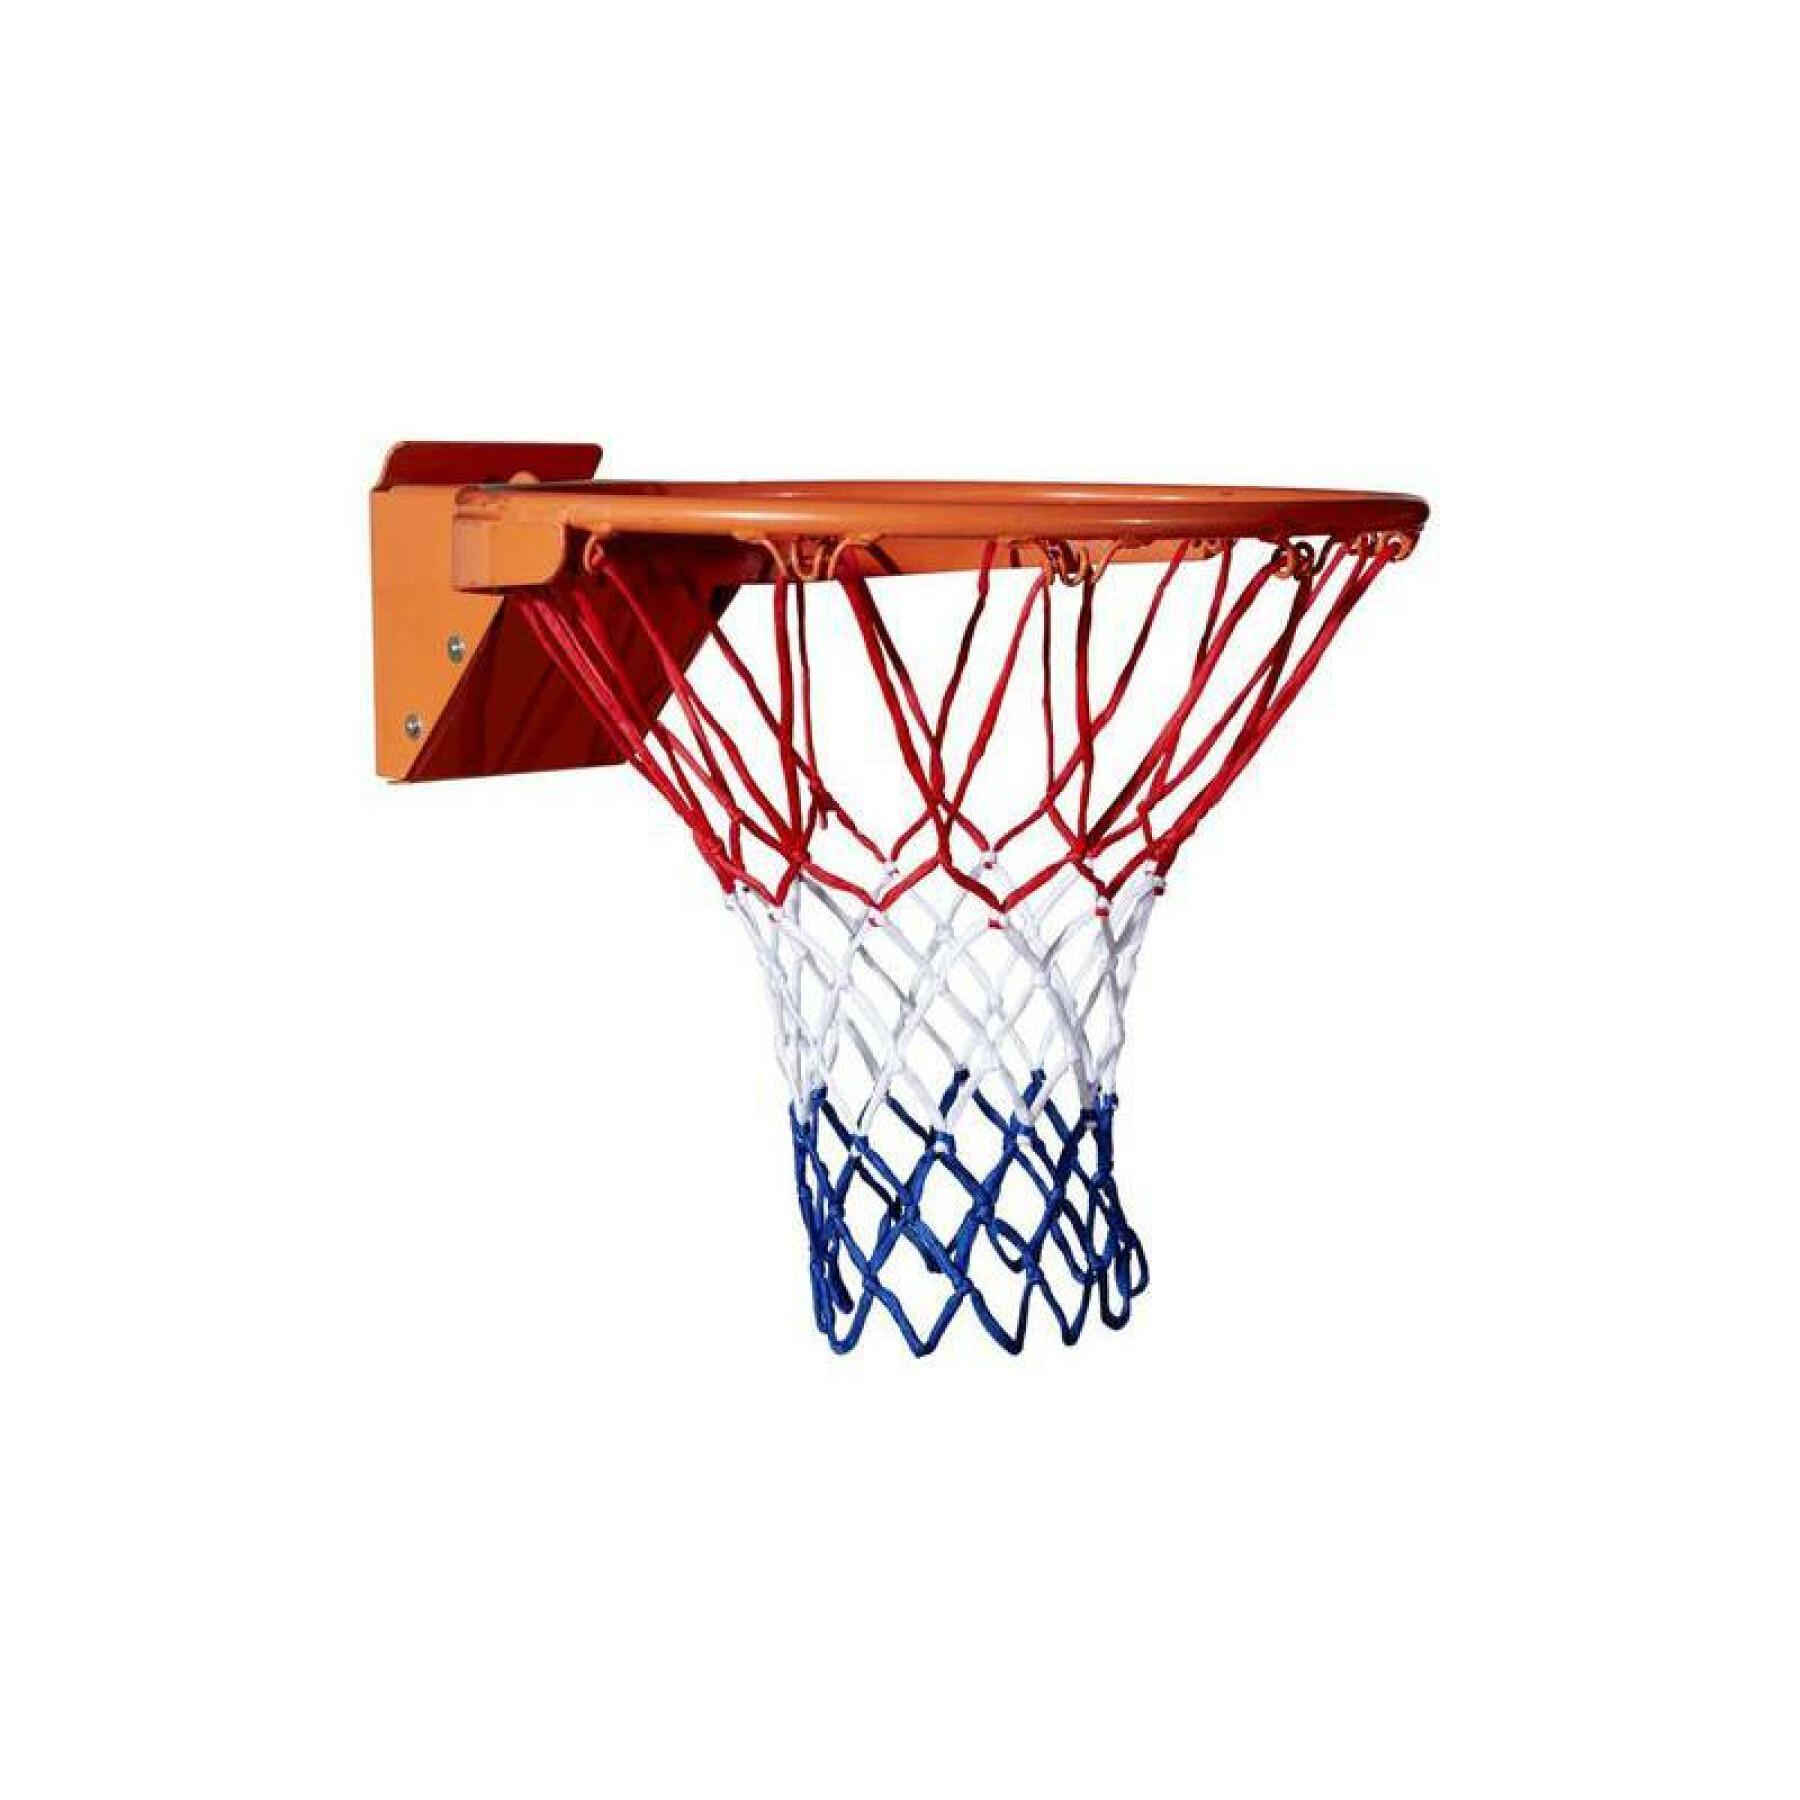 Rete da basket Wilson NBA Recreational